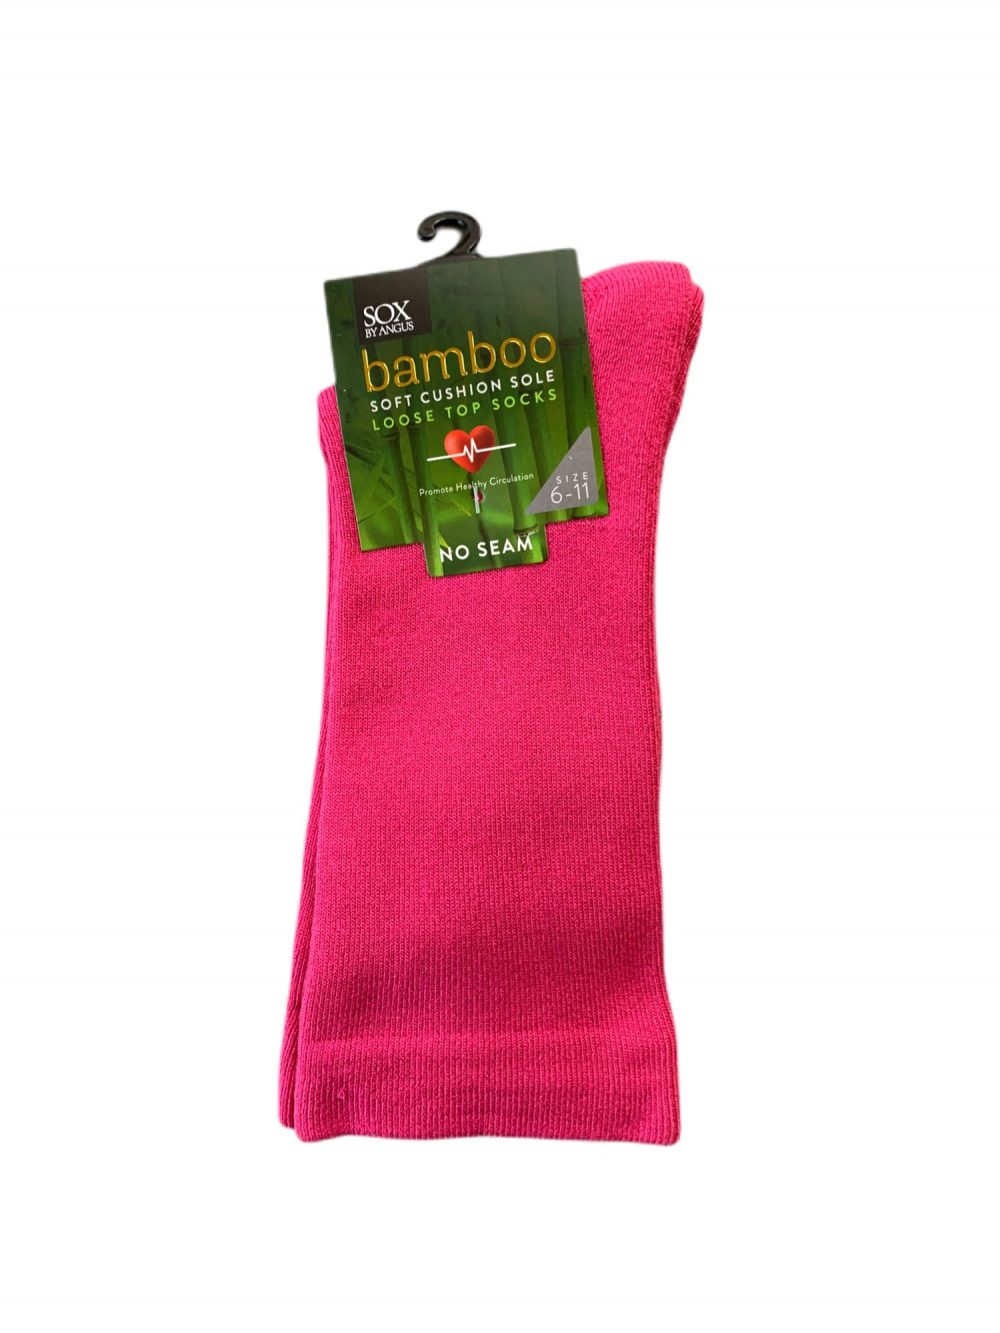 Bamboo Plain Cushion Foot Loose Top Socks - Hot Pink - 3 - 8, Bulk Buy $60/6 pairs